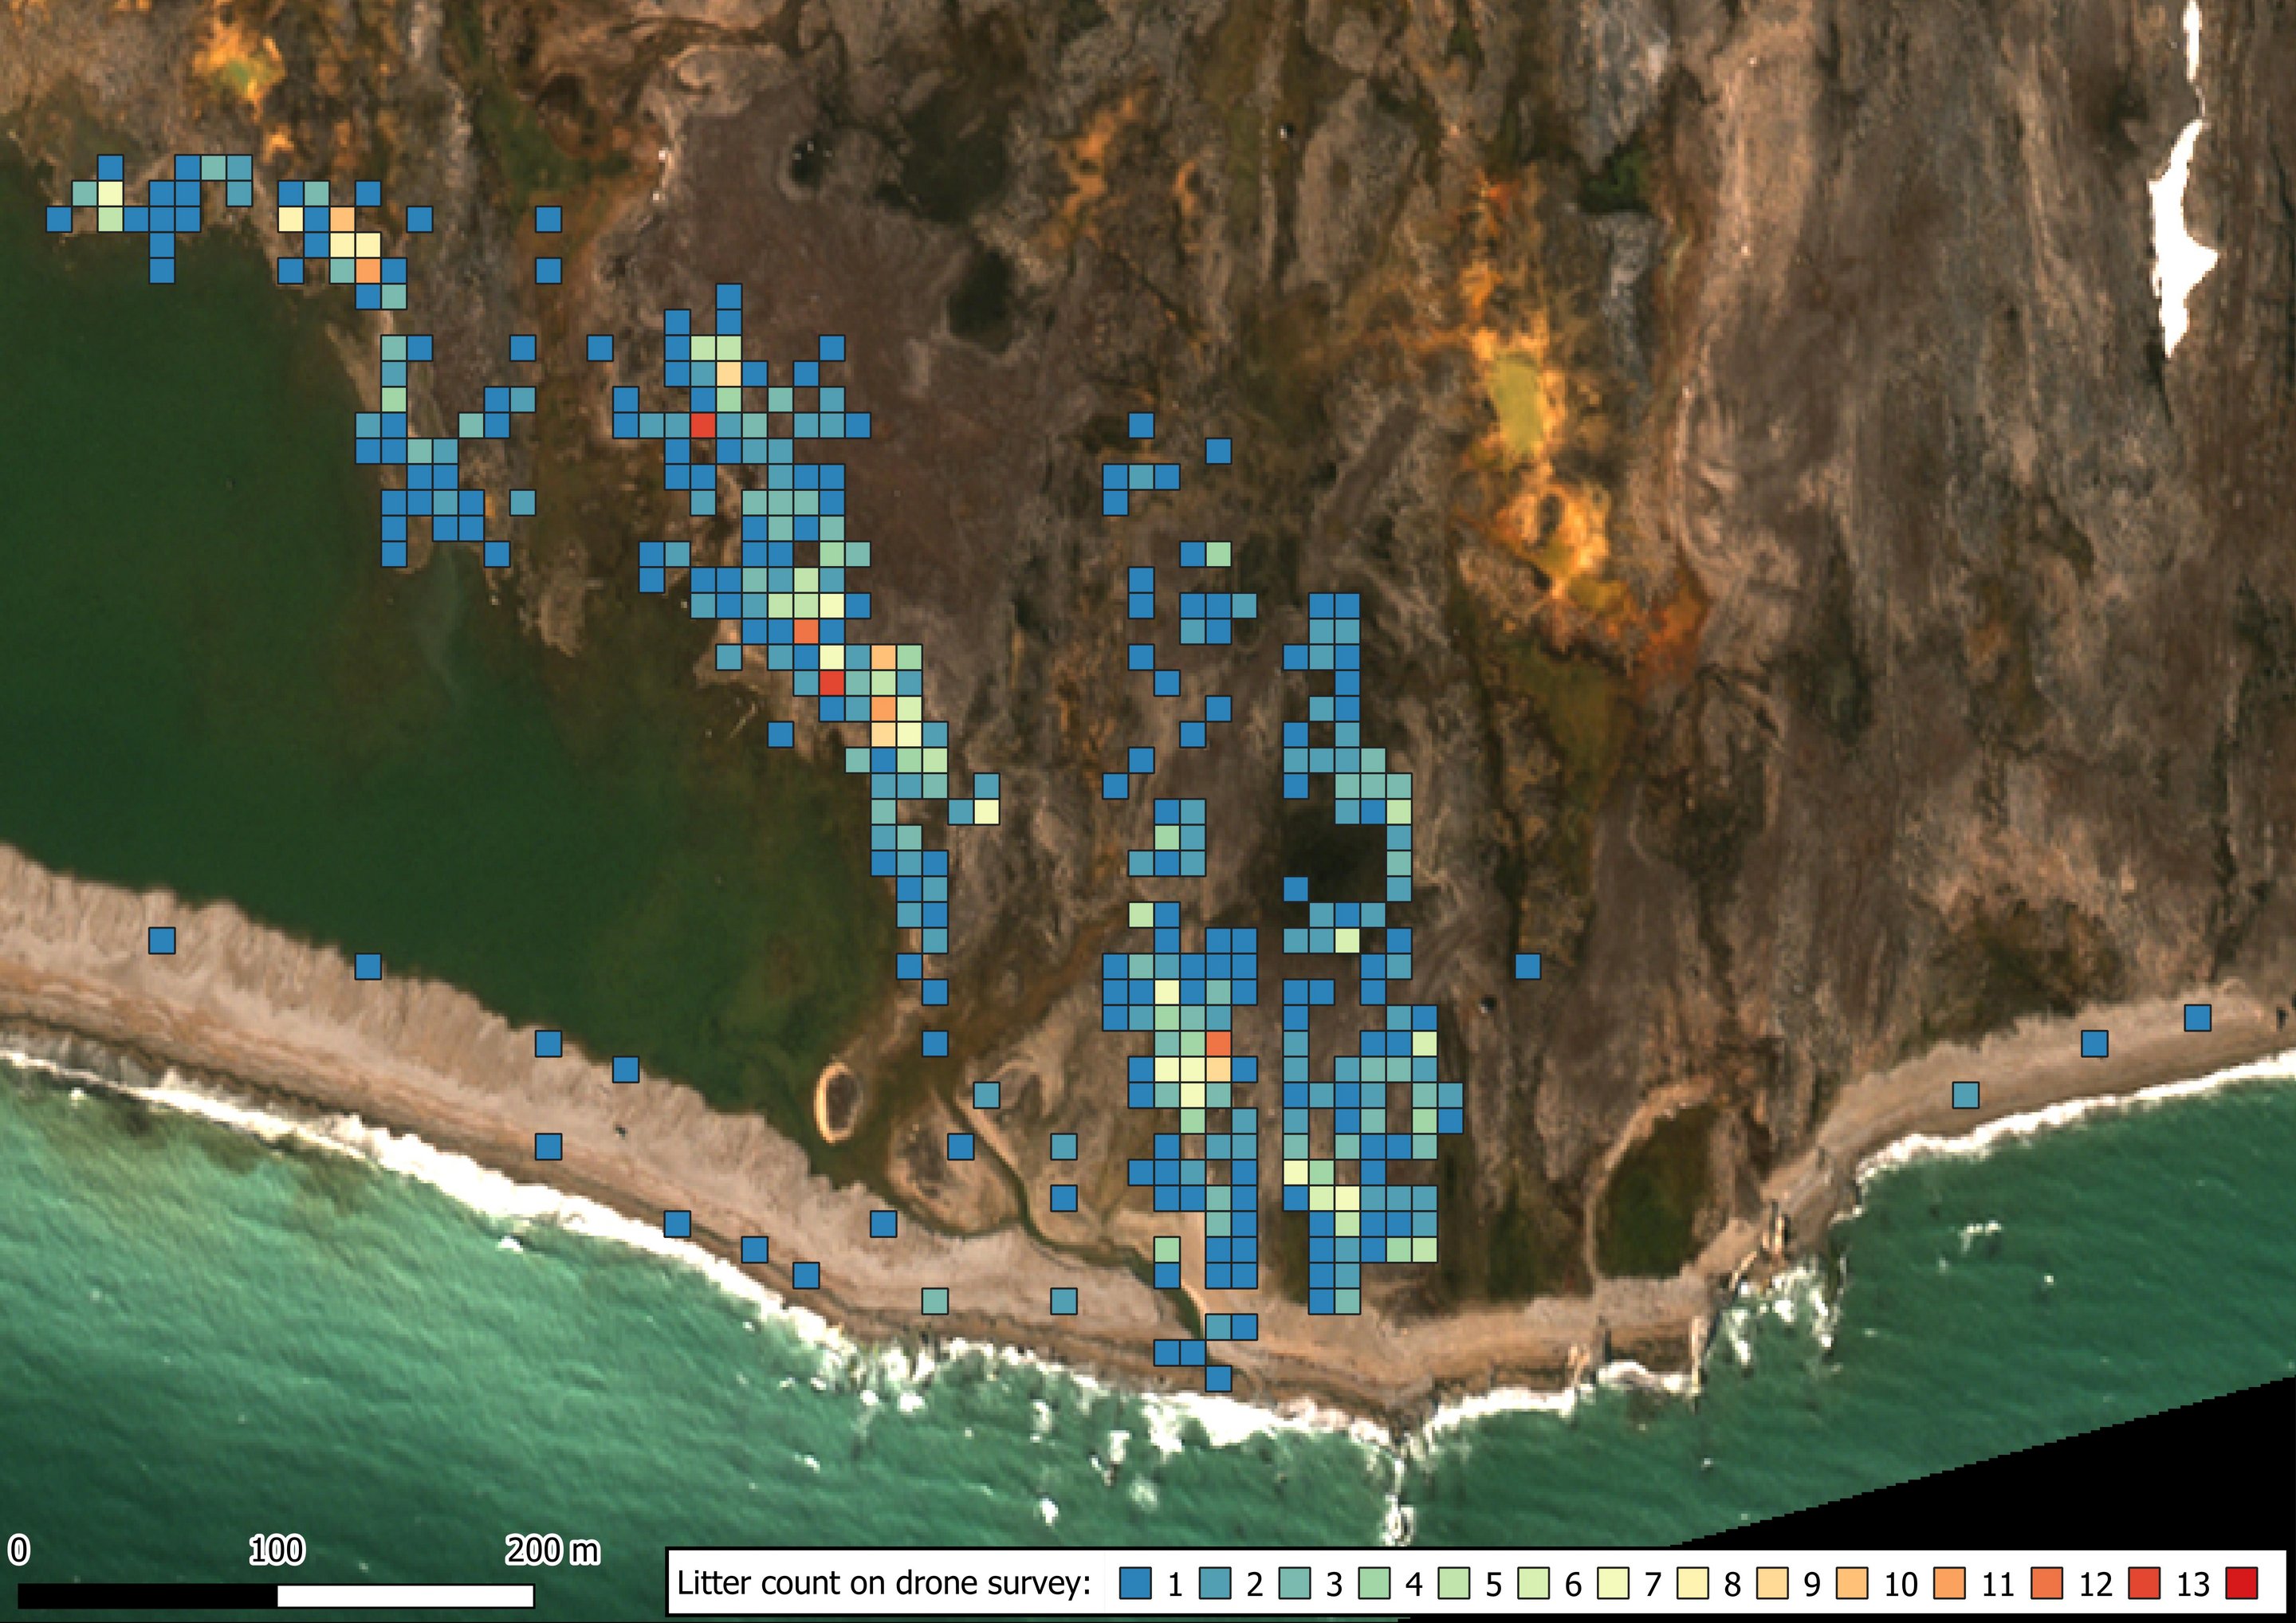 WV3 Satellitenbild eines Küstenabschnitts in der Arktis mit der Anzahl an Plastikobjekten, die auf den Drohnenbildern identifiziert wurden. Die identifizierten Objekte sind  in einem Raster mit farbigen Quadraten gekennzeichnet.